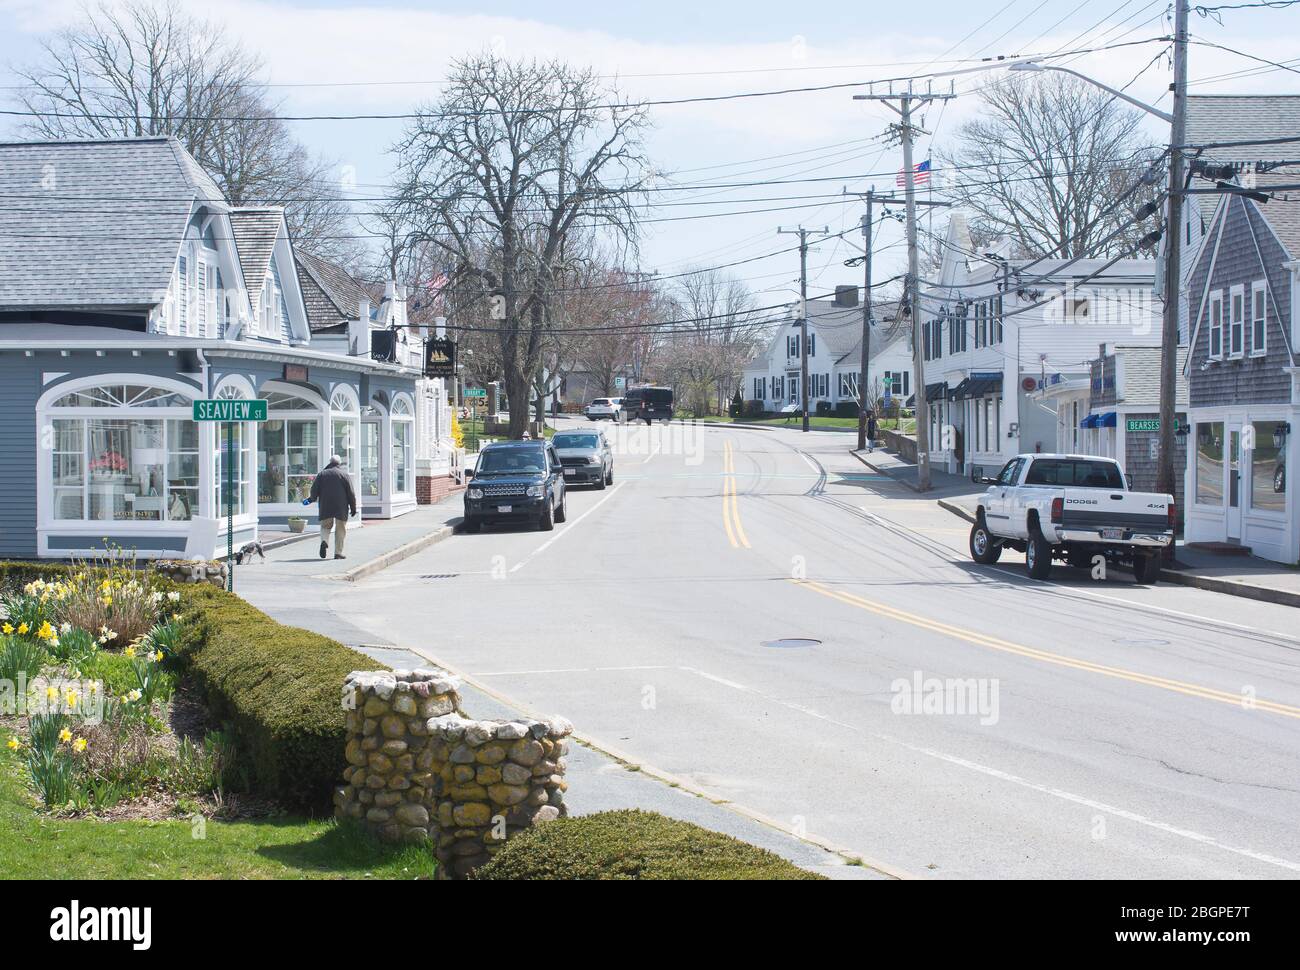 Une rue presque déserte en raison de l'arrêt de Covid 19 - Chatham, Massachusetts sur Cape Cod, États-Unis Banque D'Images